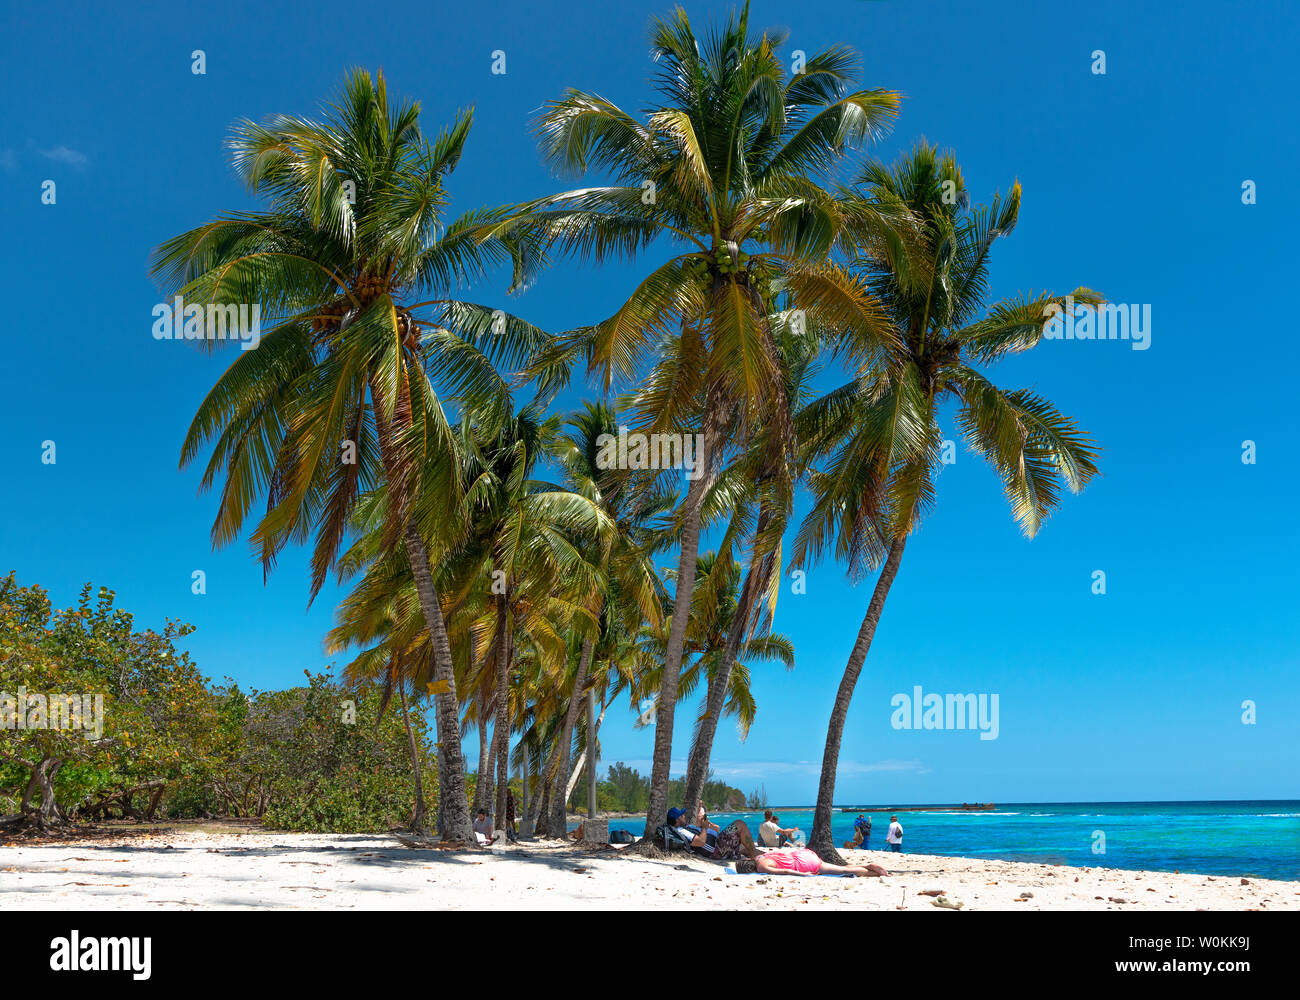 Playa Coco parte di Playa Giron una bellissima spiaggia di sabbia bianca con mare turchese e palme ondeggianti in Pinar del Rio Provincia, Cuba, Caraibi Foto Stock